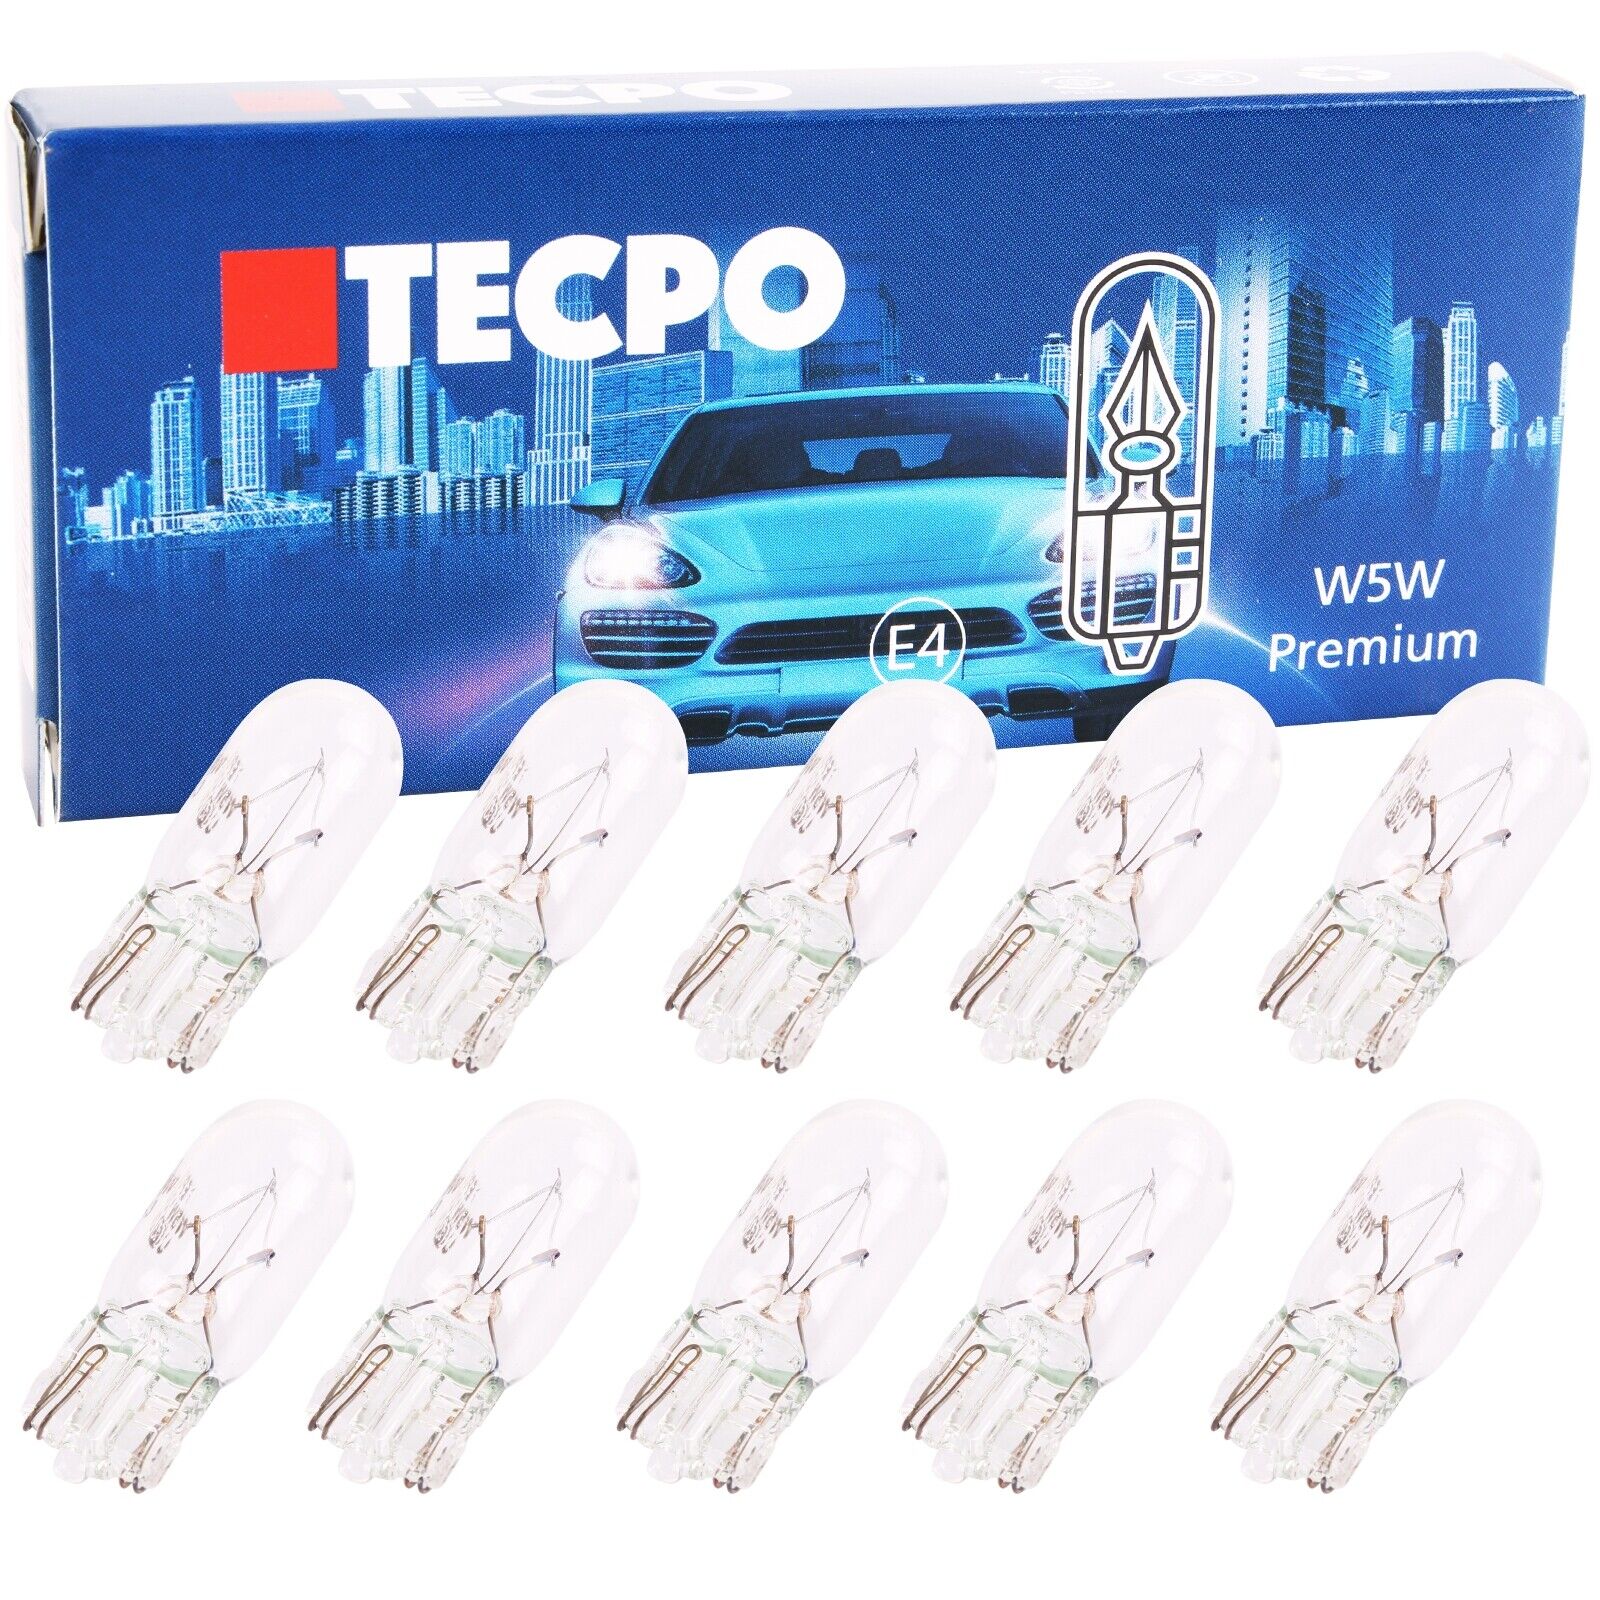 50x Glassockel Glühbirnen W5w Standlicht Kennzeichenlich Autolampe T10 12v  5w online kaufen